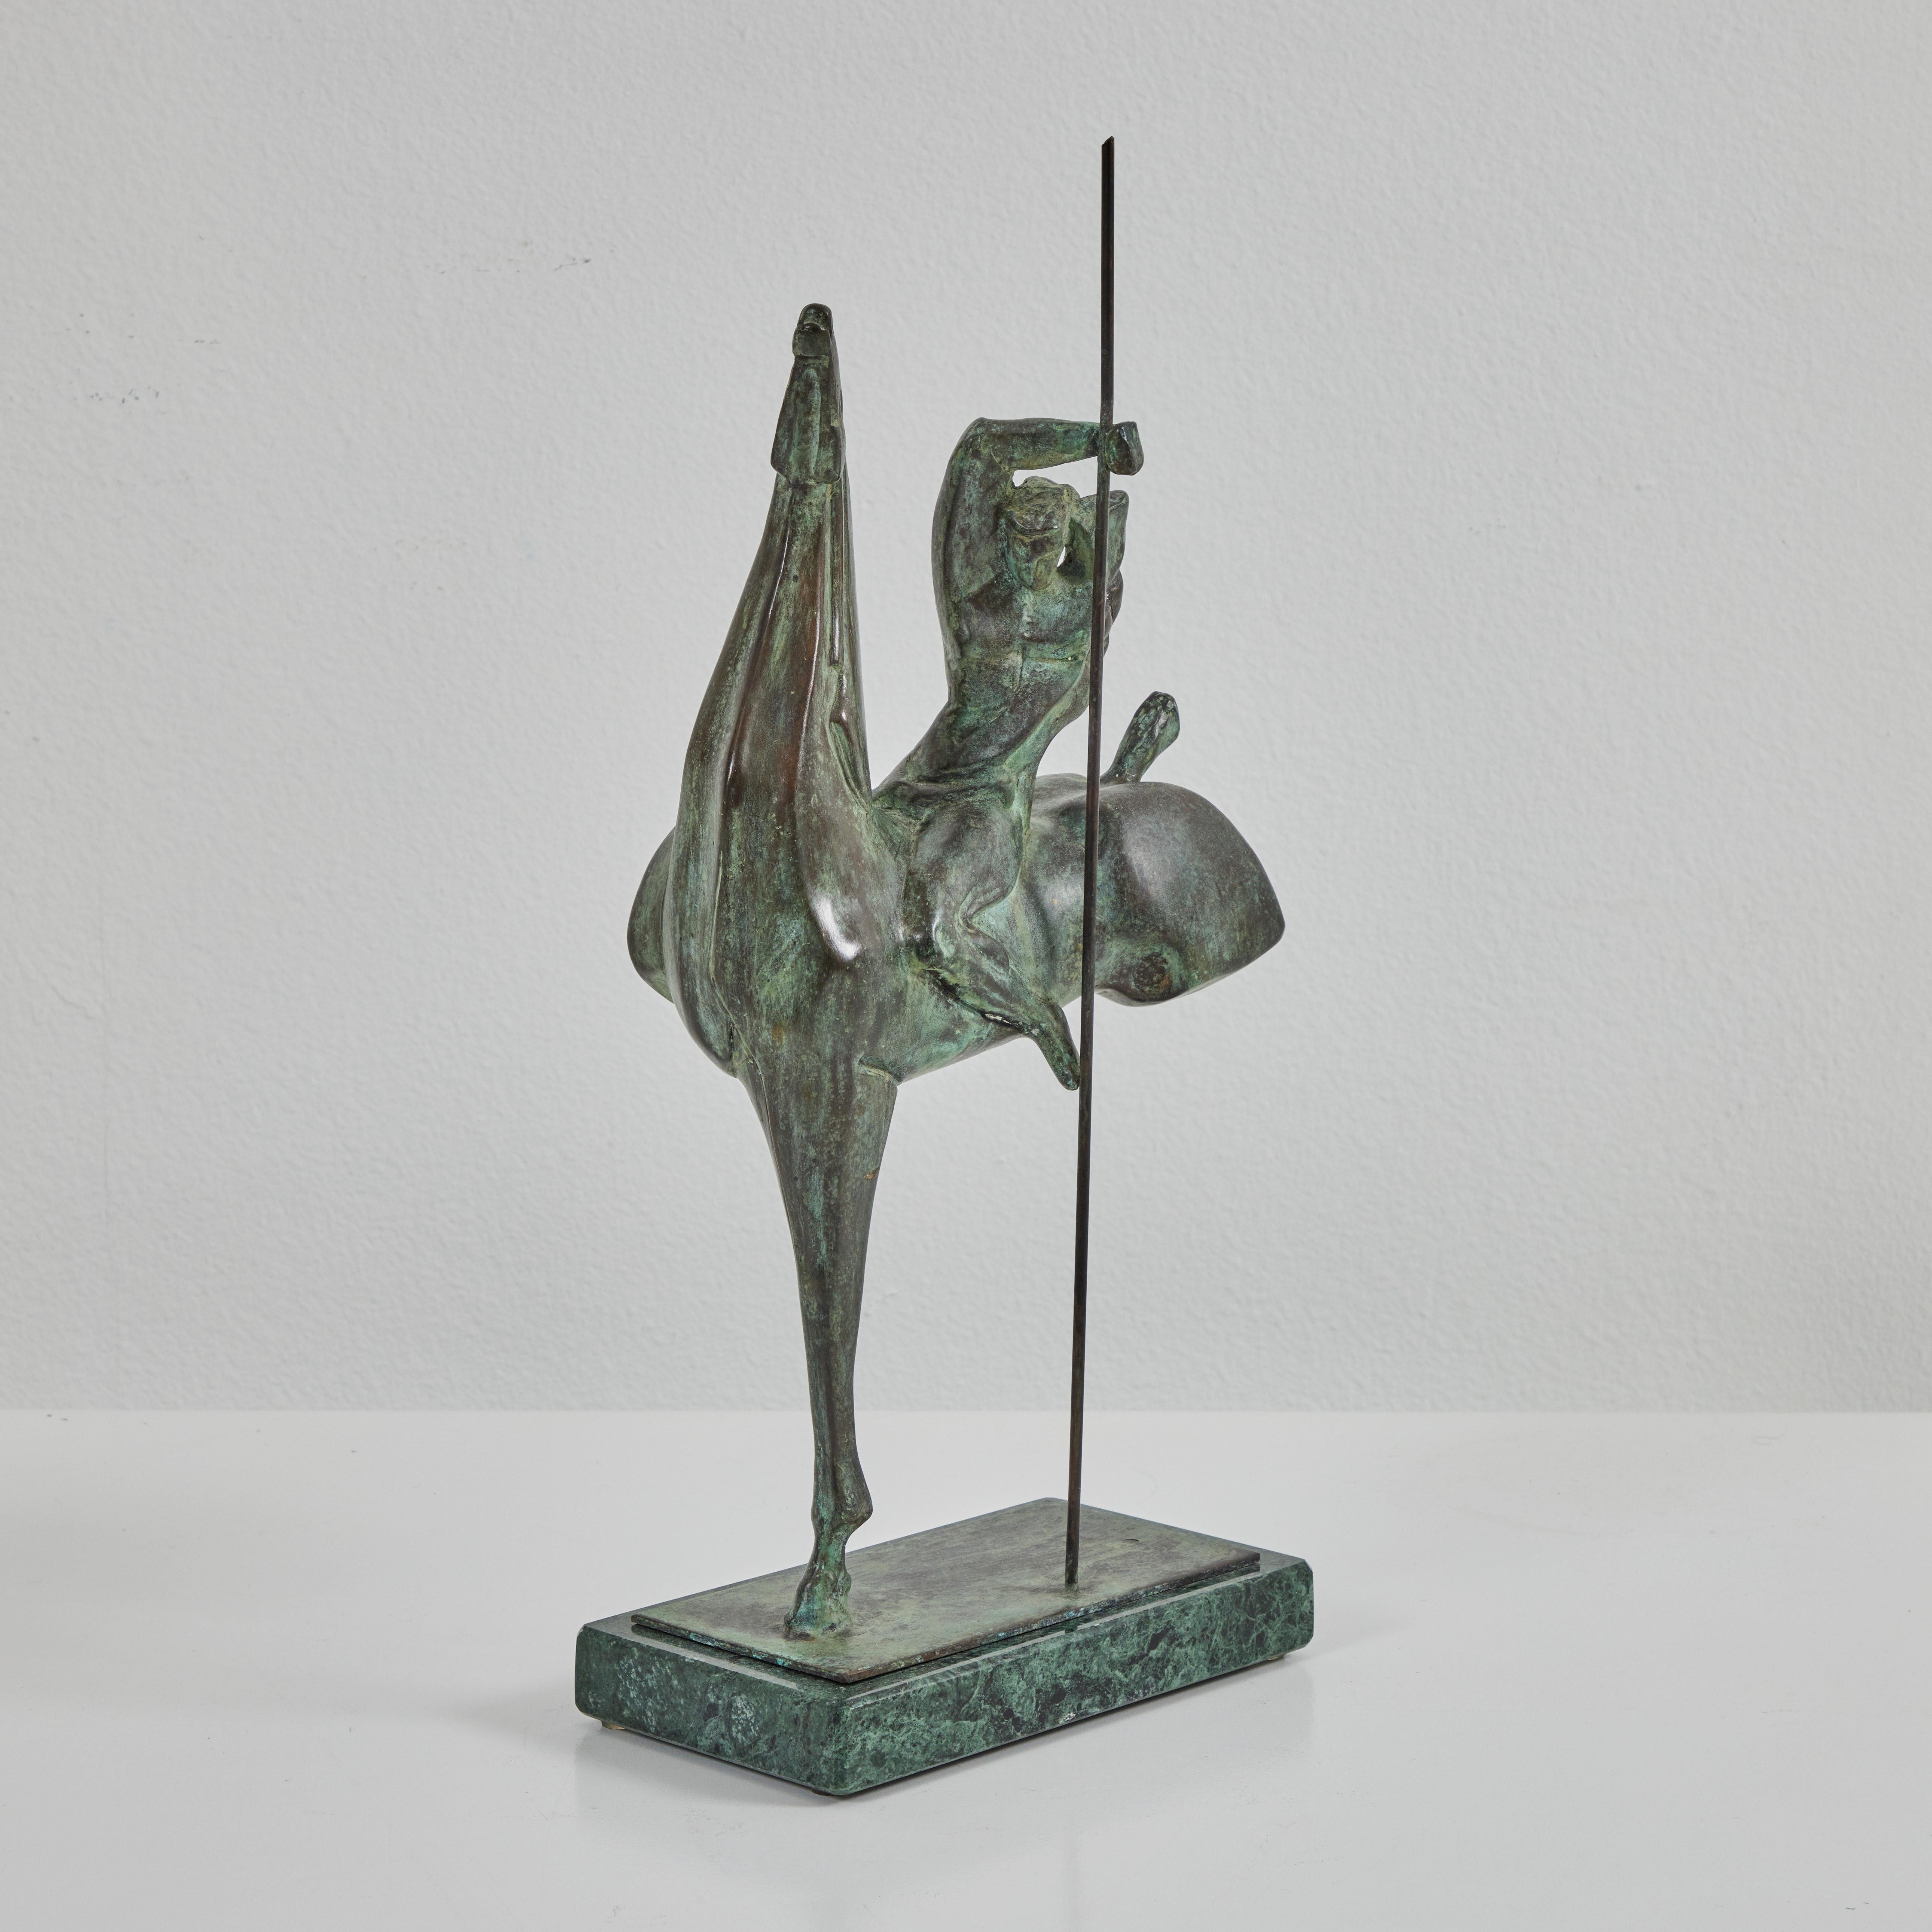 Cette sculpture de Claudio Nicoli représente un cavalier sur un cheval avec un bâton. La patine unique crée l'apparence d'une texture. La base est en marbre. La pièce a été signée par Claudio Nicoli et numérotée 3/6 au dos du cheval. 

Né à San